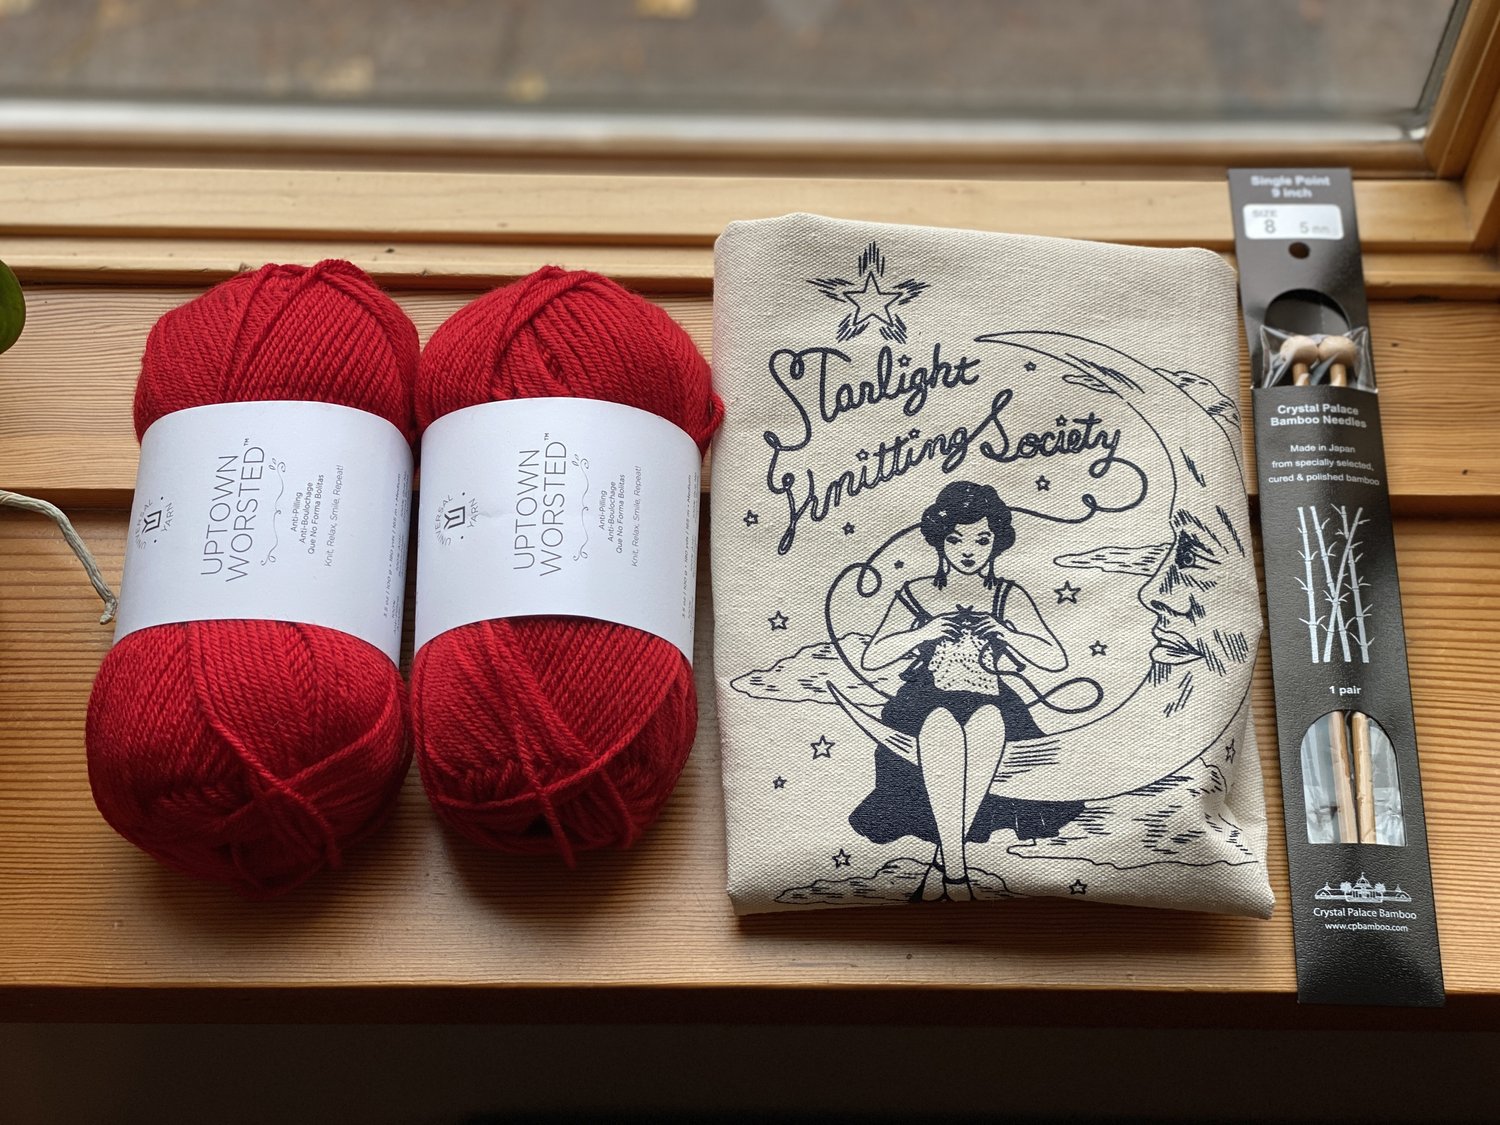 BeKnitting Knitting Starter Kit for Beginners